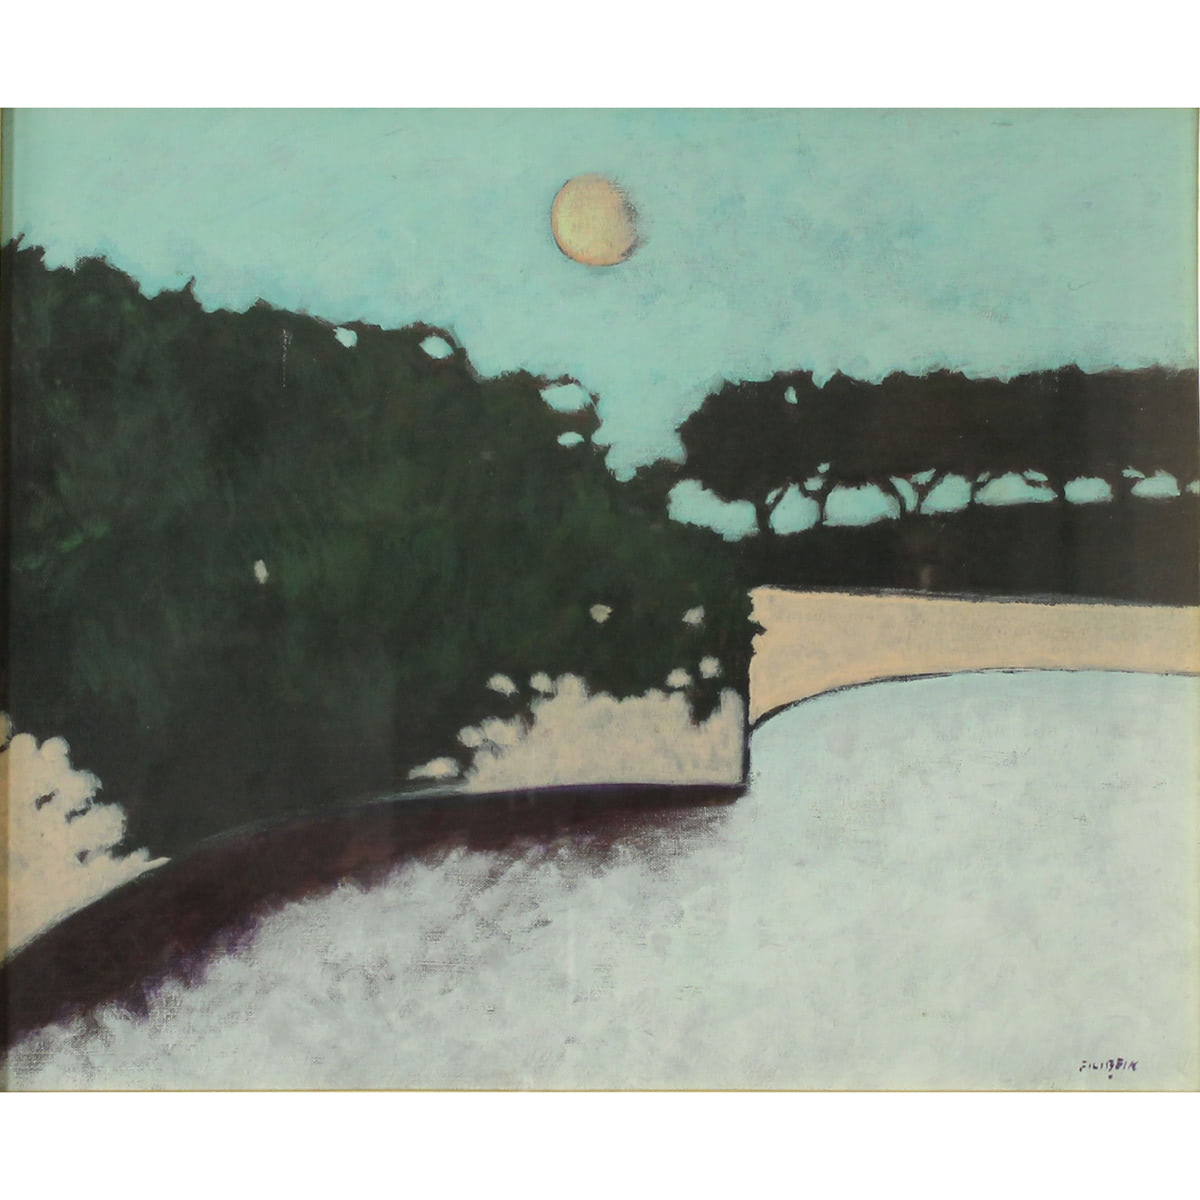 Gilberto Filibeck (1930) "Paesaggio" - "Landscape"